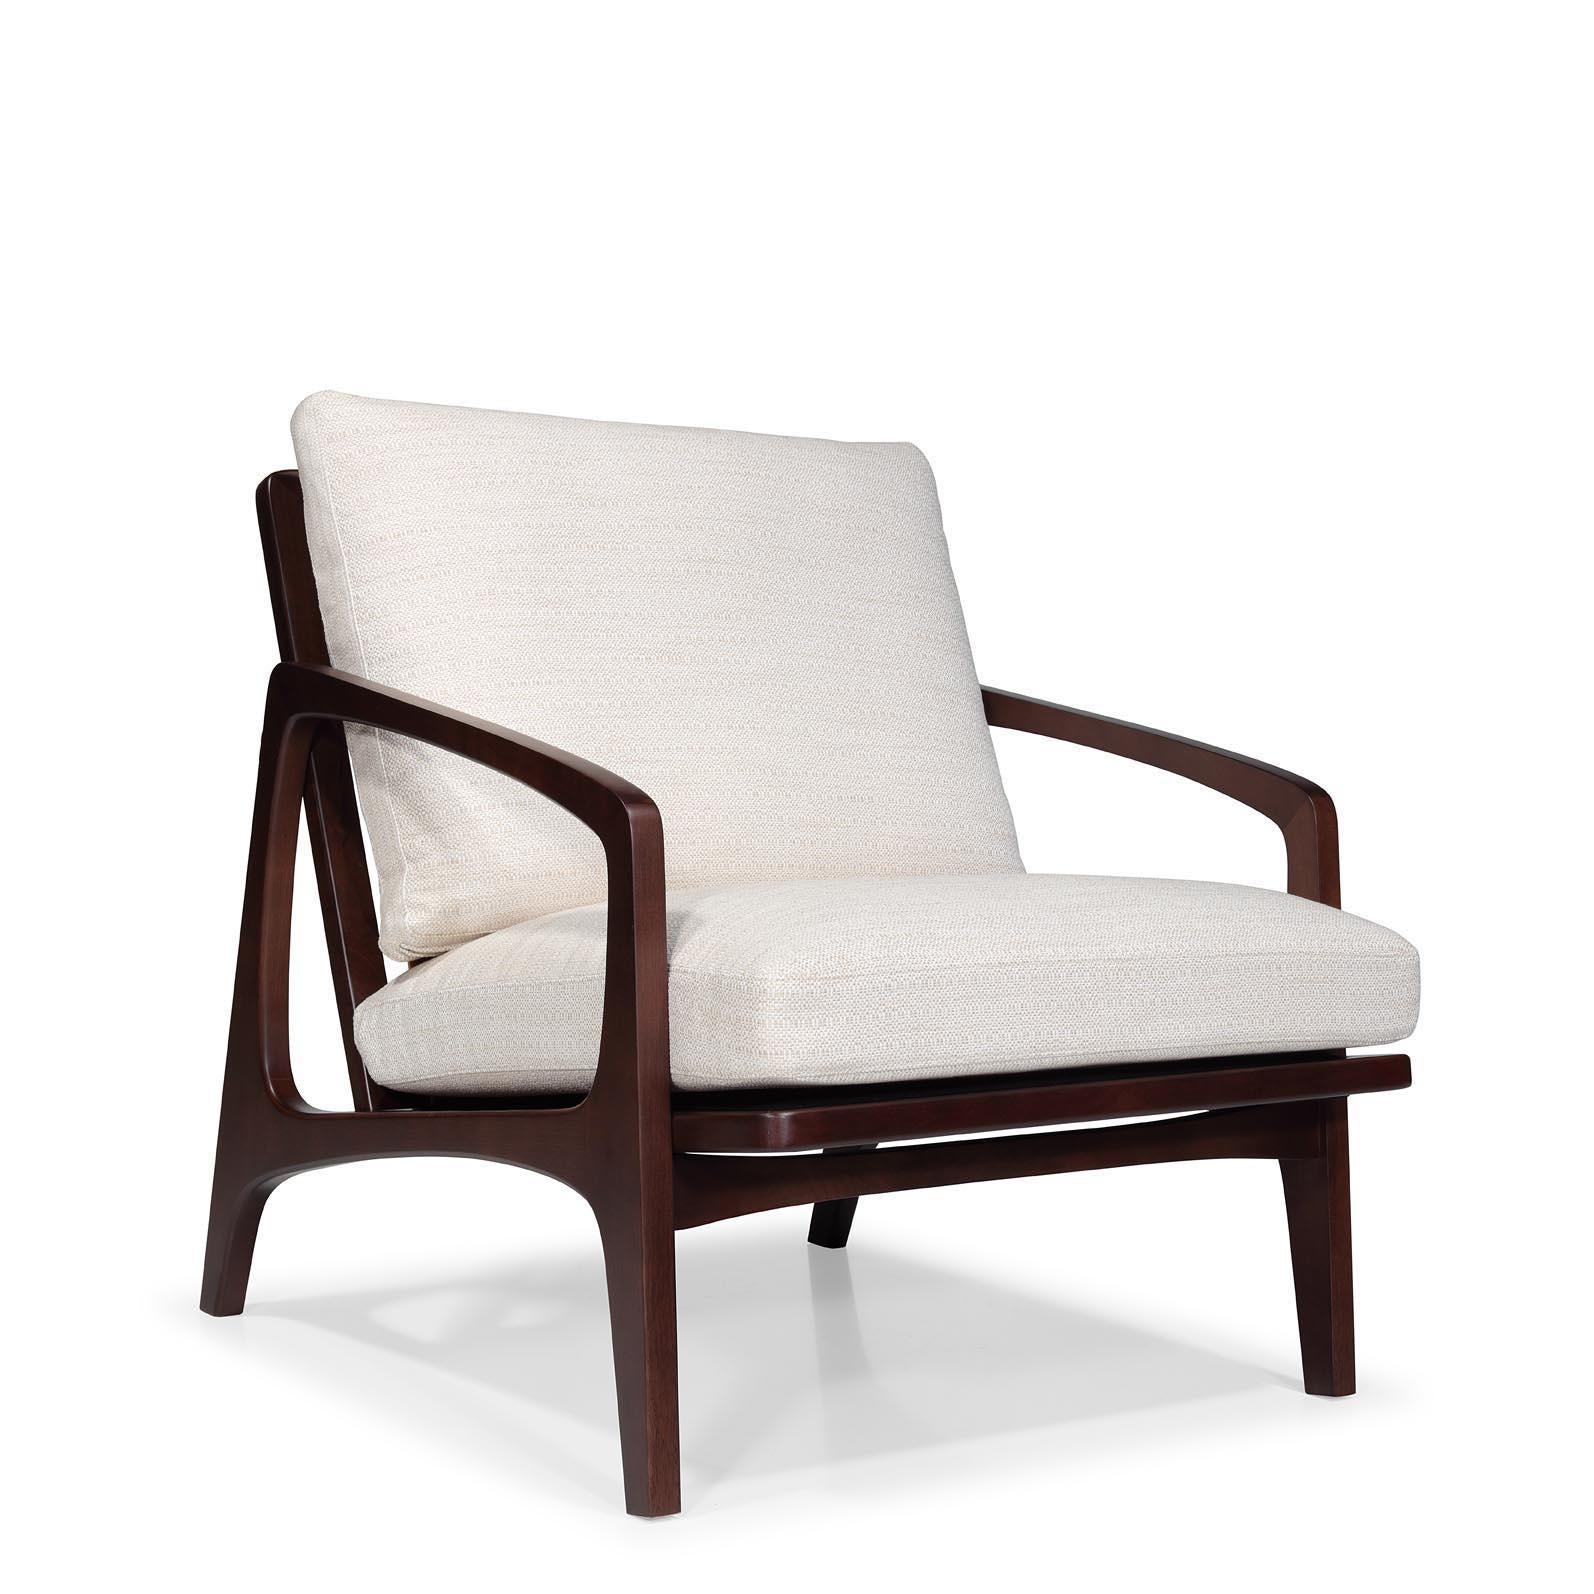 William lounge est une chaise au caractère affirmé, inspirée par les classiques du design du 20e siècle. Nous apportons notre propre interprétation d'un archétype classique qui vous apportera un sentiment de nostalgie avec un langage